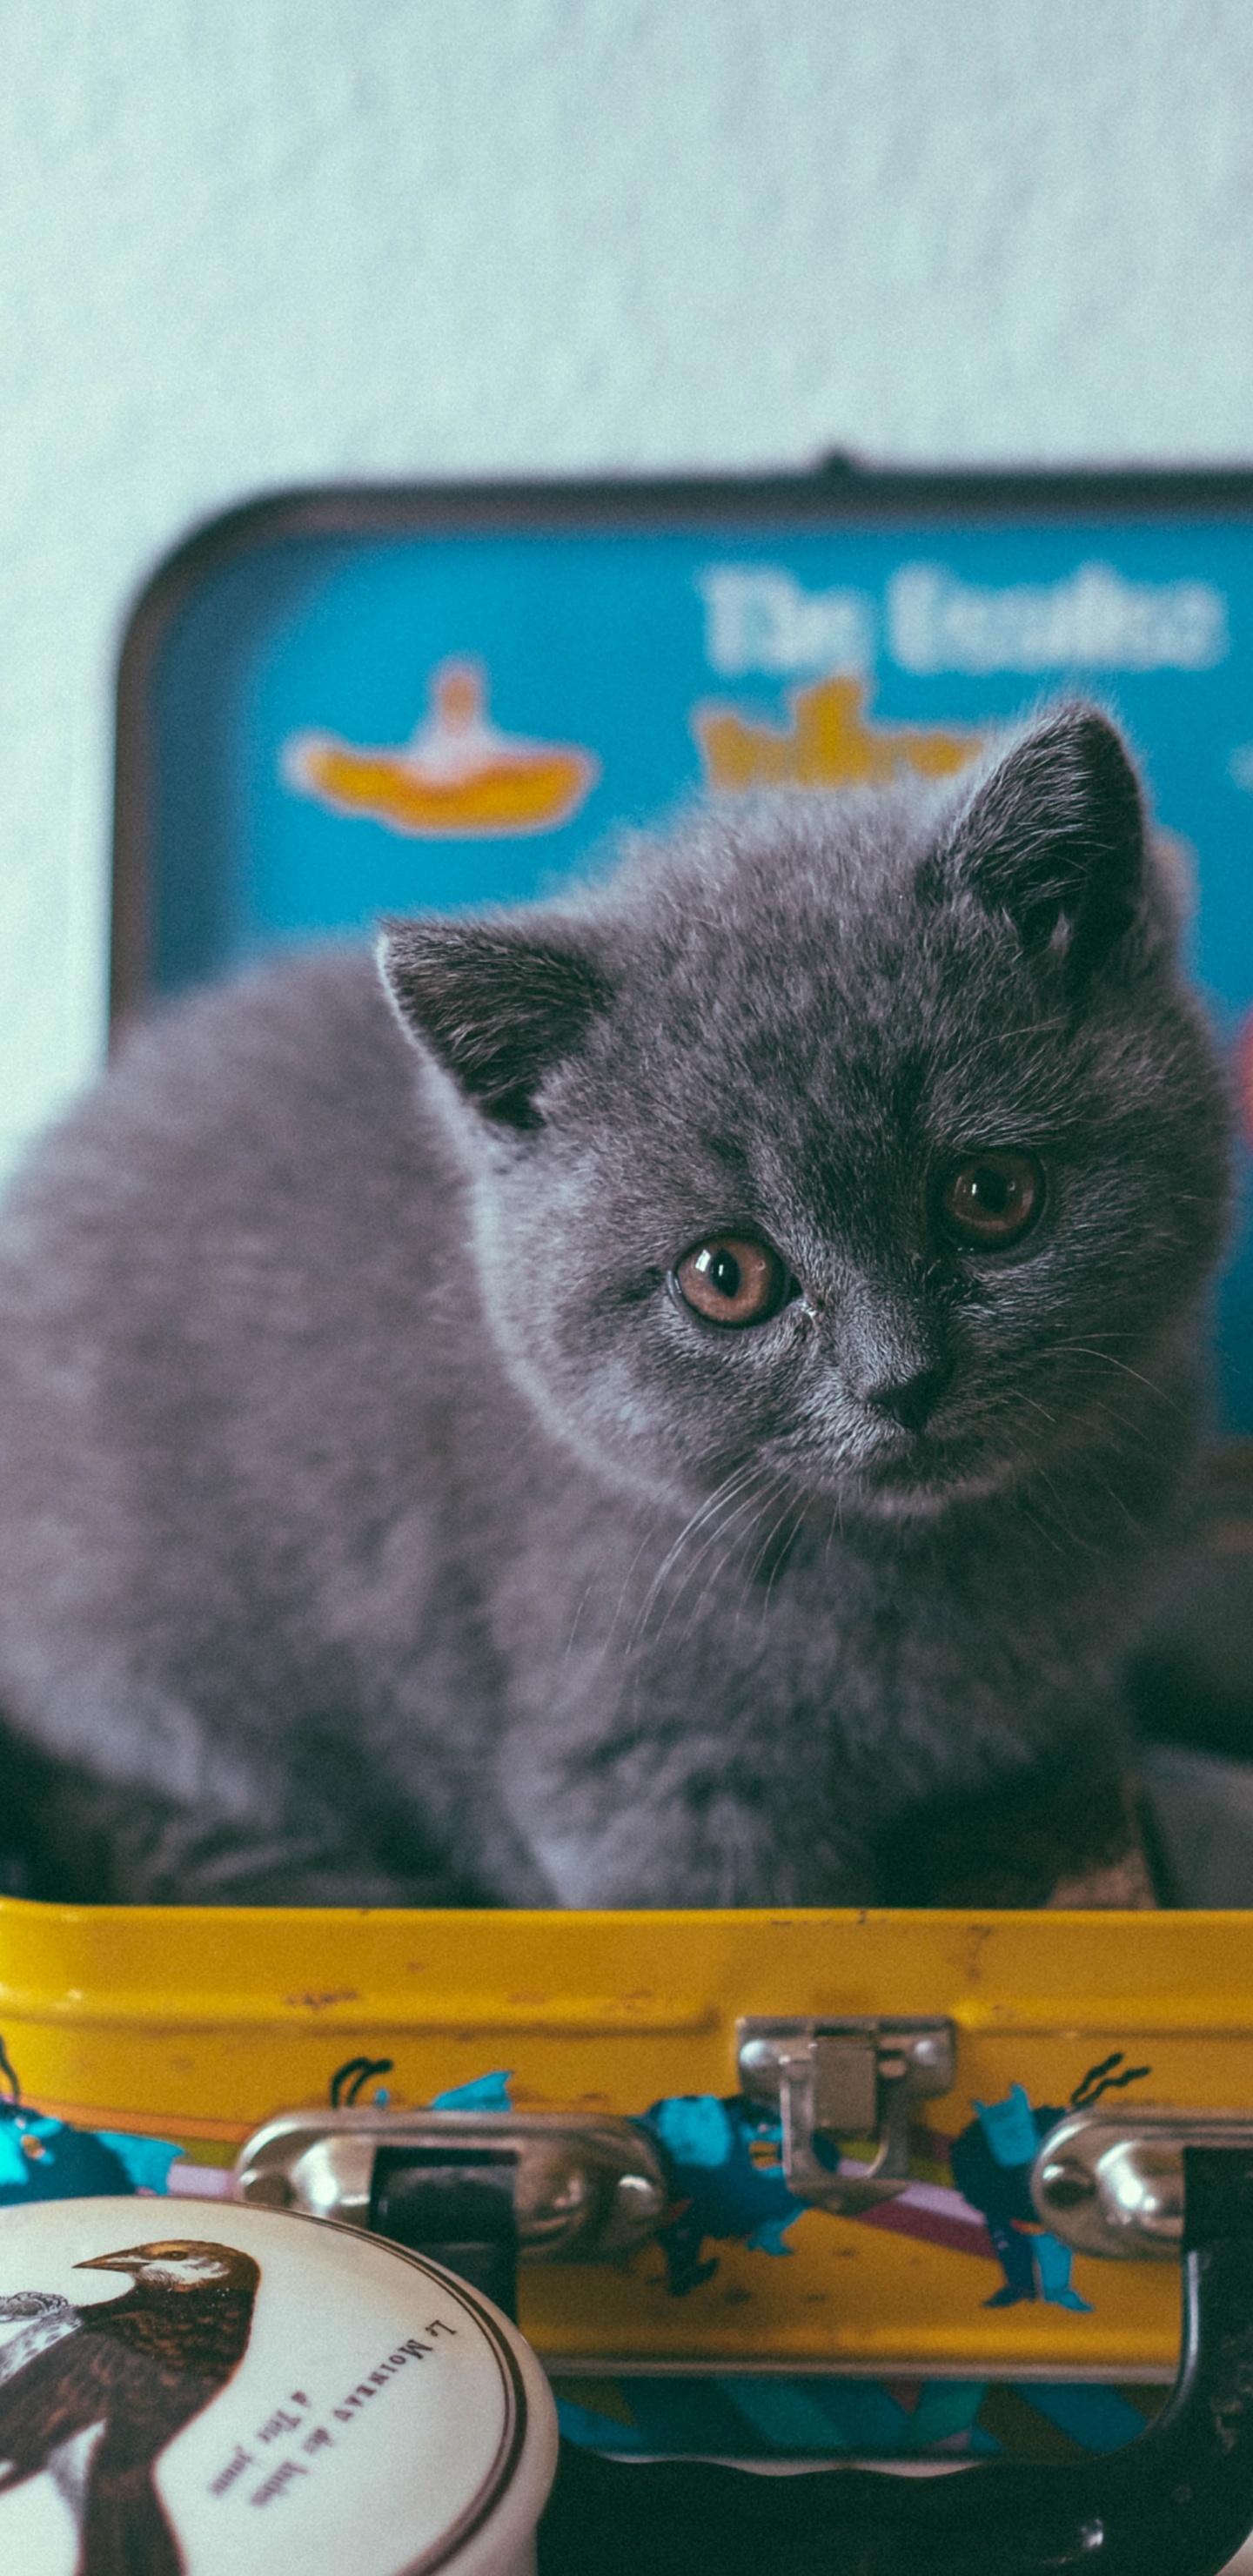 Gato Gris en Recipiente de Plástico Amarillo y Azul. Wallpaper in 1440x2960 Resolution